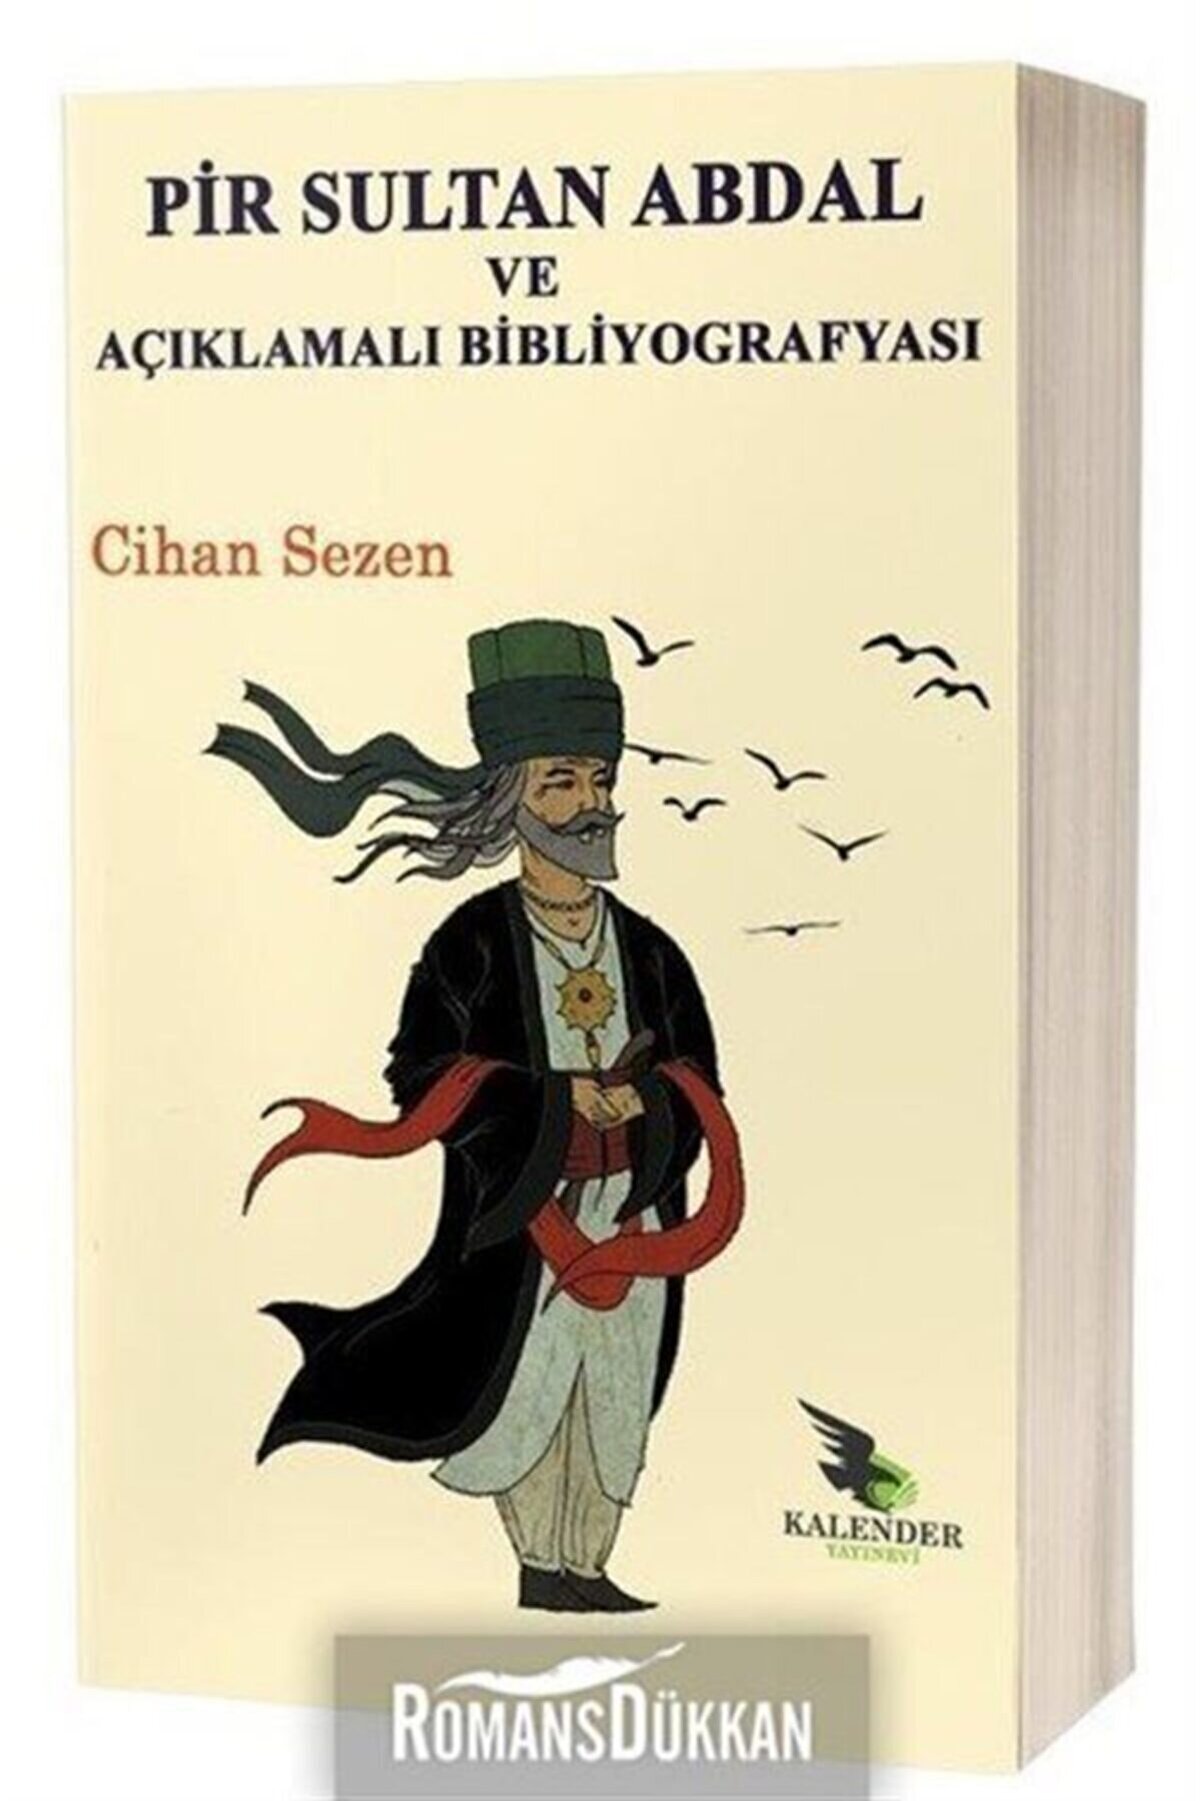 Kalender Yayınevi Pir Sultan Abdal Ve Açıklamalı Bibliyografyası